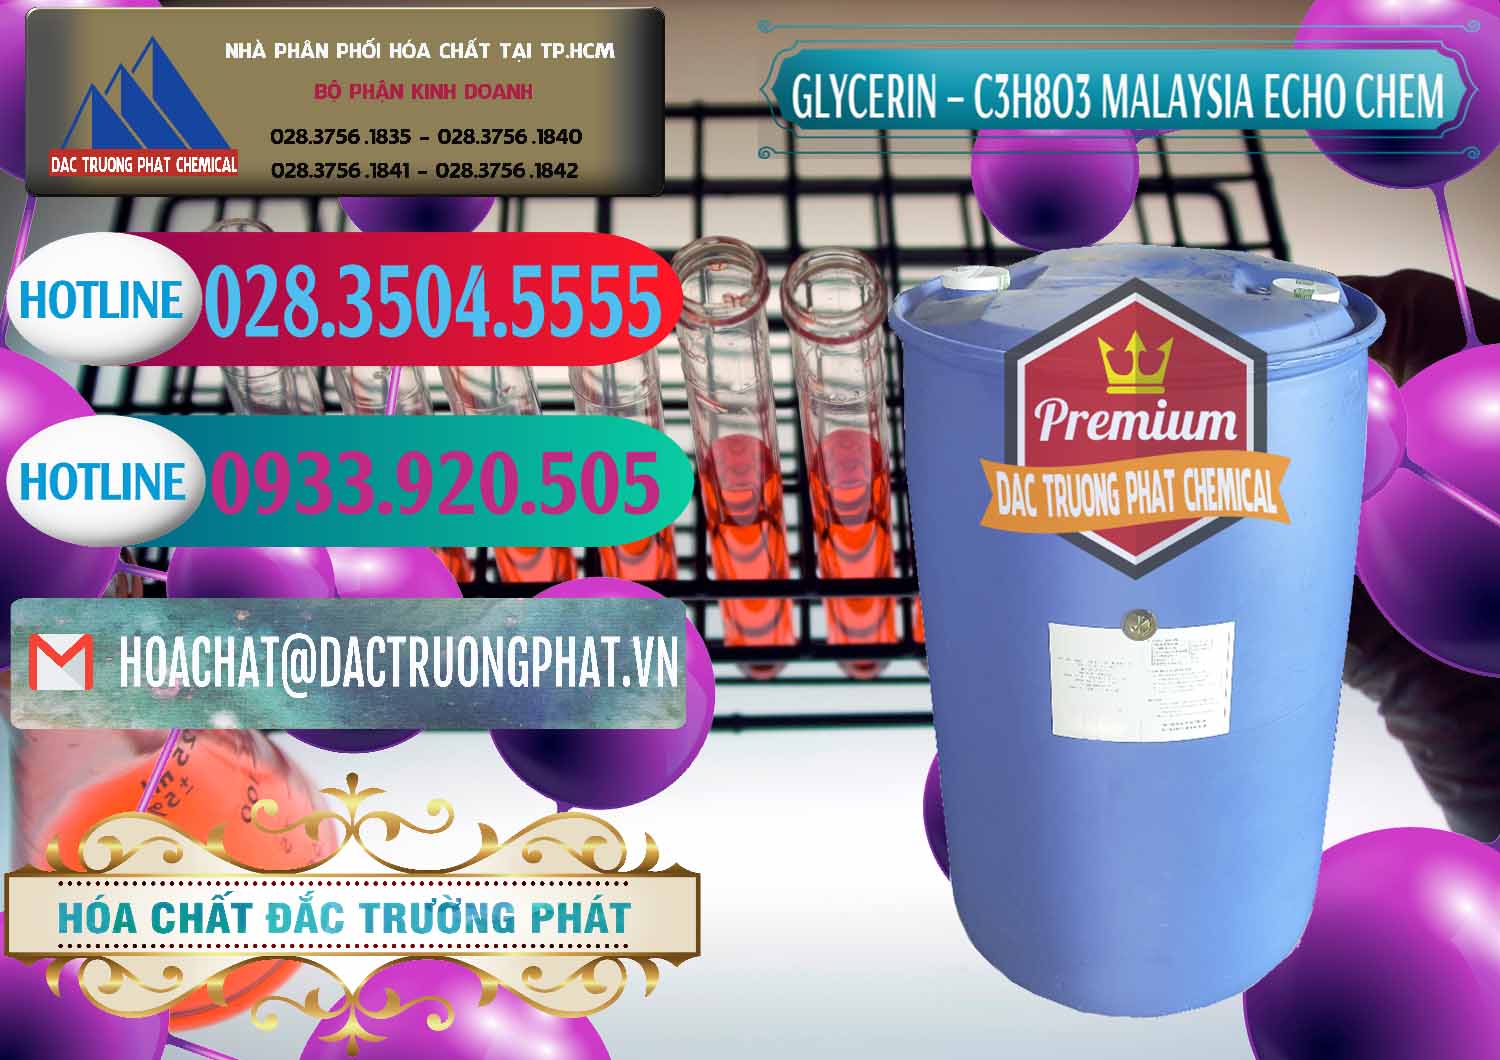 Đơn vị chuyên bán ( cung ứng ) Glycerin – C3H8O3 99.7% Echo Chem Malaysia - 0273 - Đơn vị kinh doanh và phân phối hóa chất tại TP.HCM - truongphat.vn